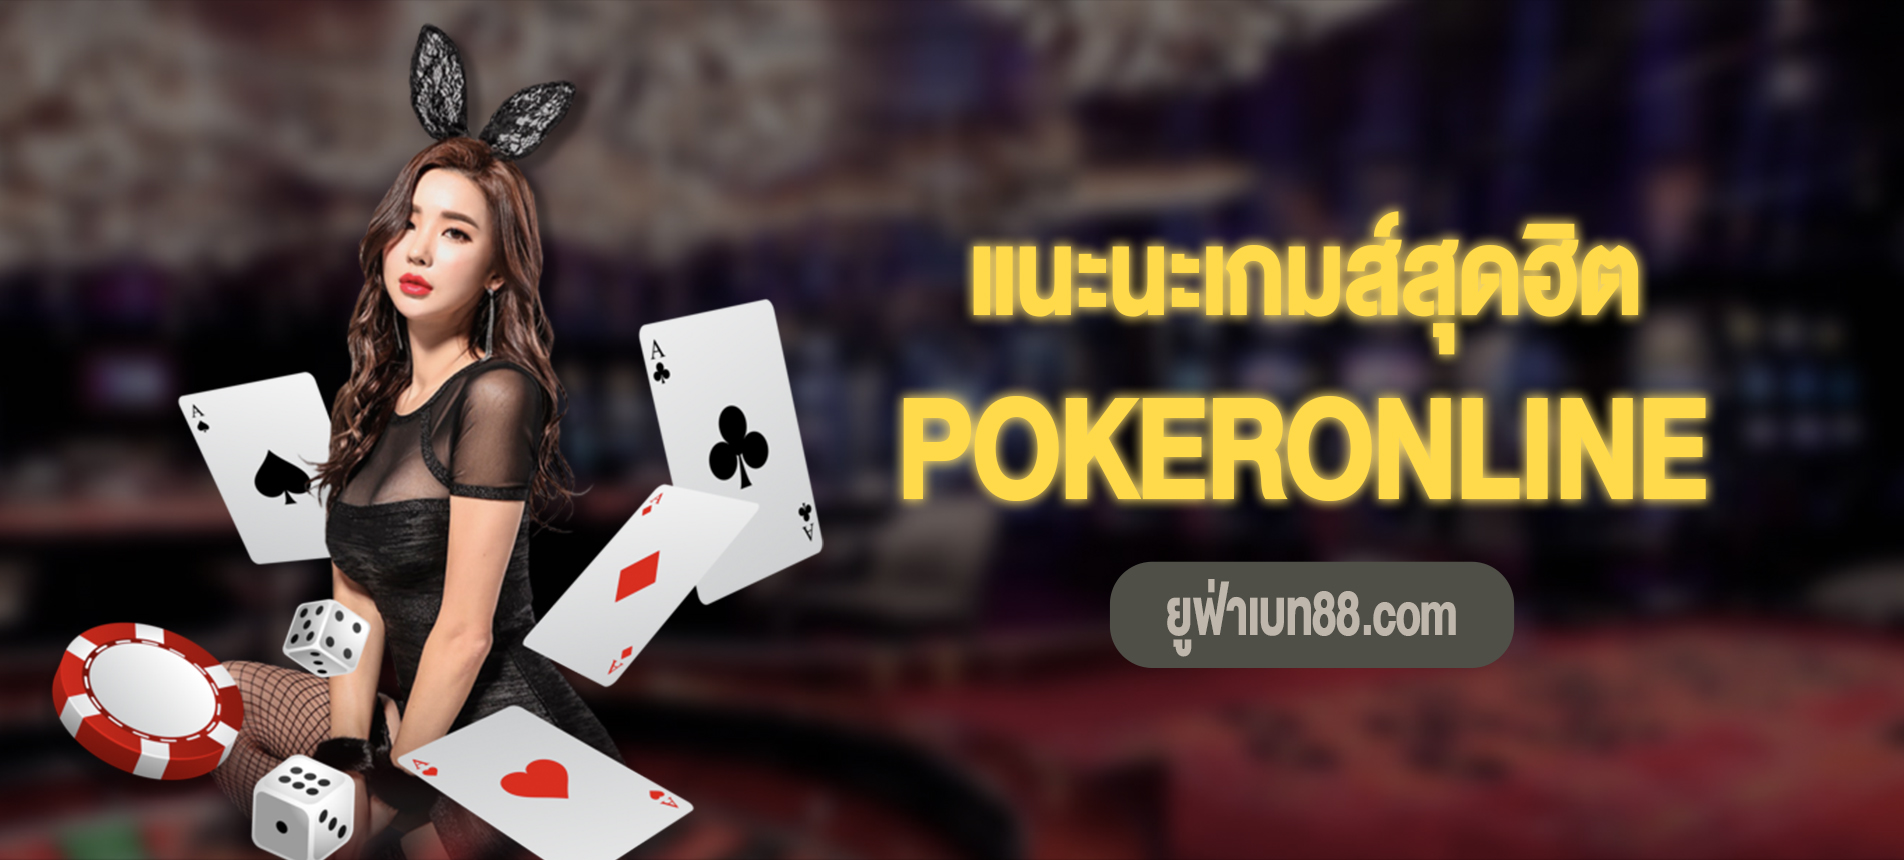 PokerOnline สนุกกับเกมโป๊กเกอร์ออนไลน์ที่ดีที่สุด